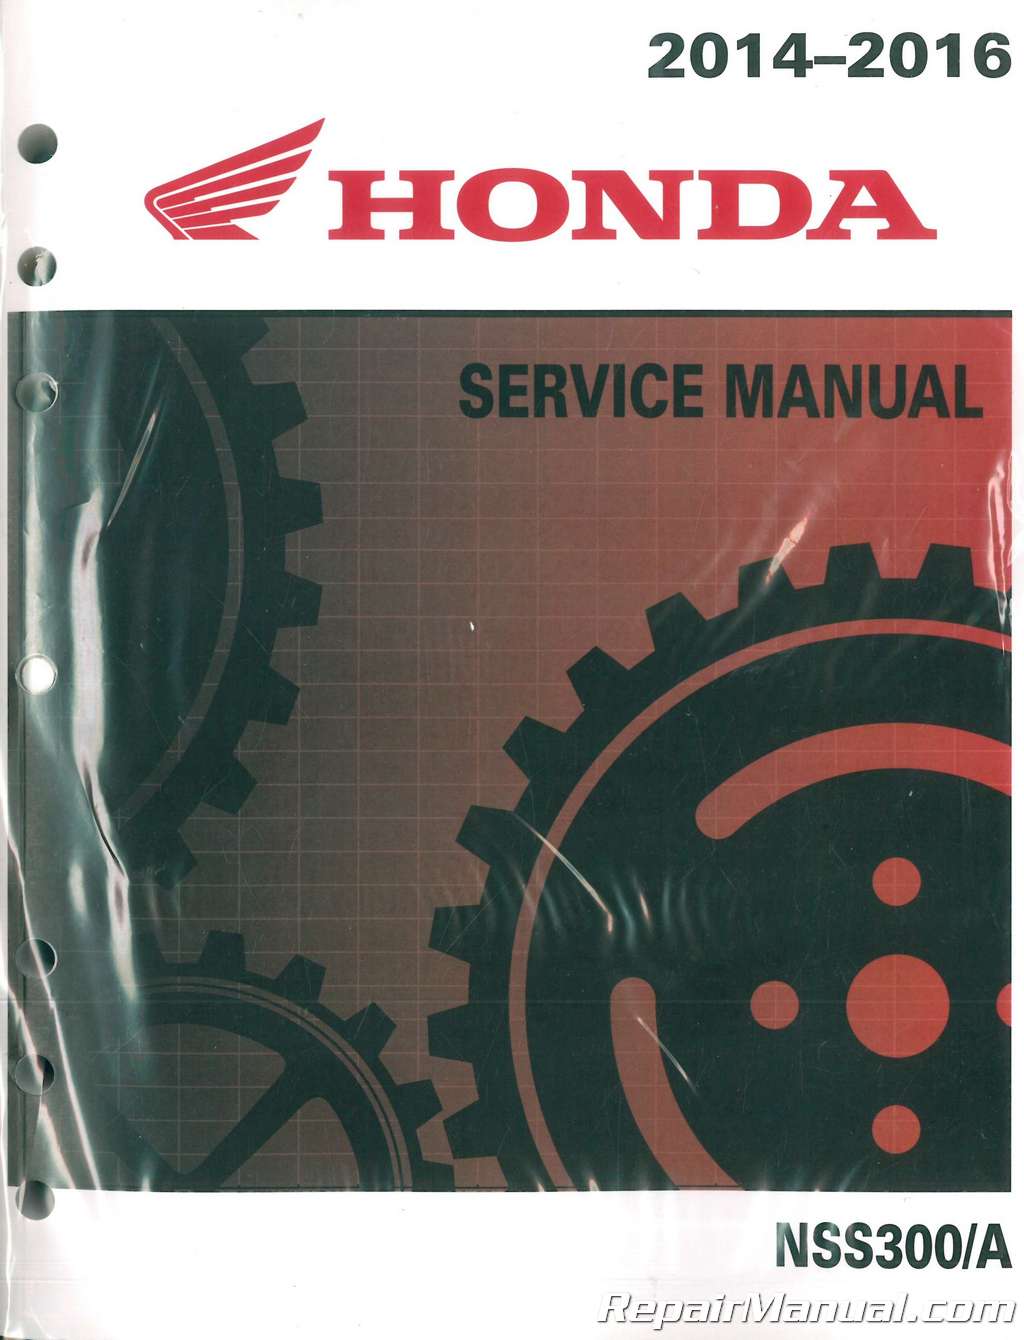 Honda Forza 300 Service Manual